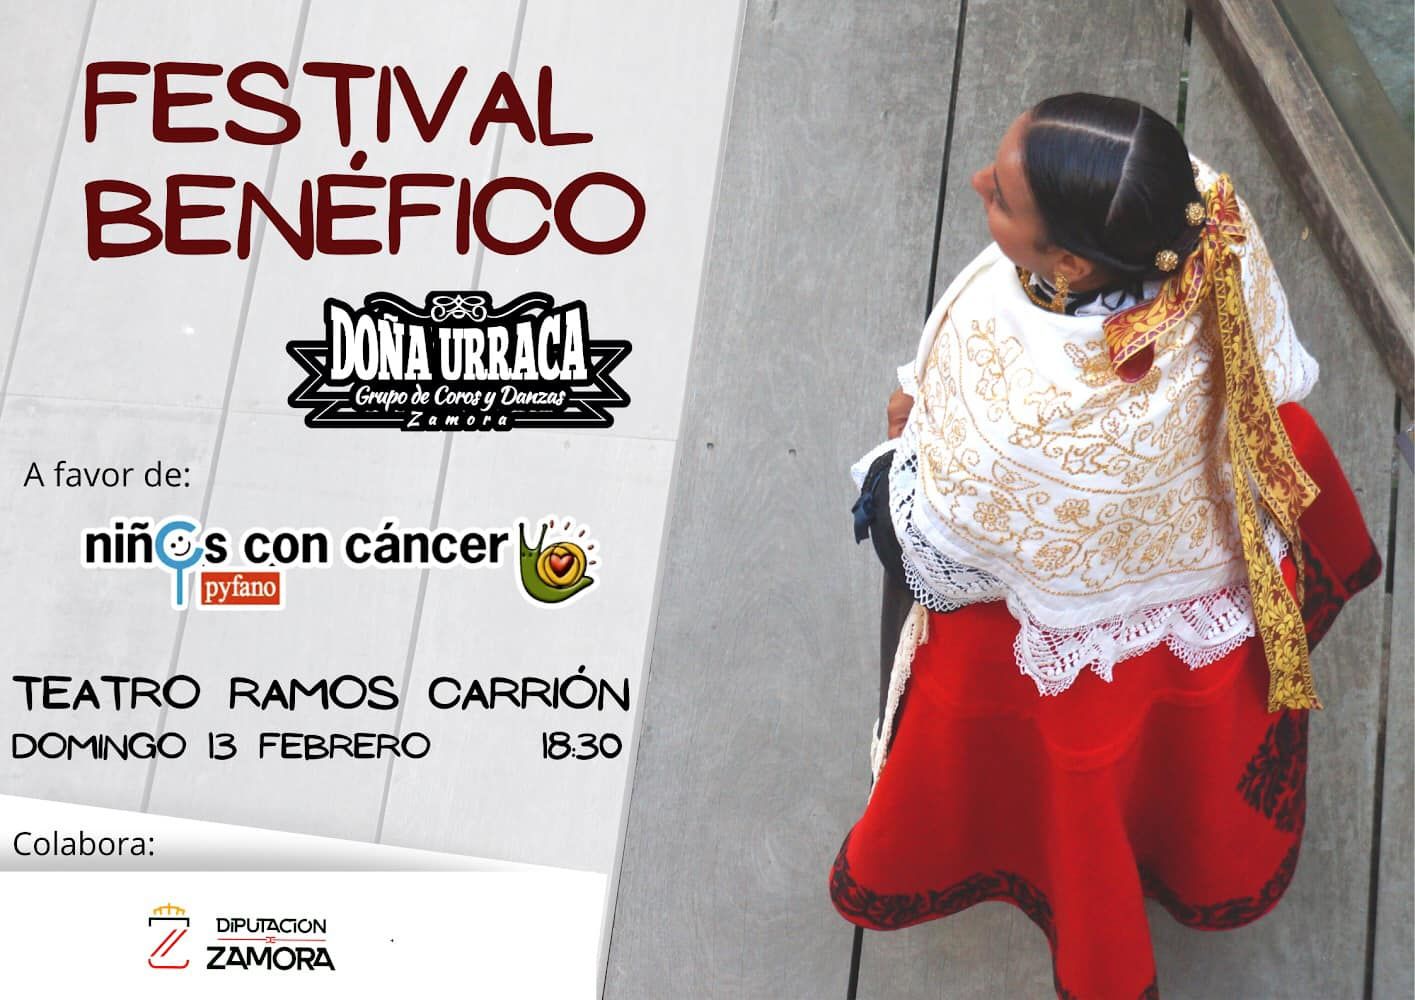 Festival benéfico de Doña Urraca para niños con cáncer